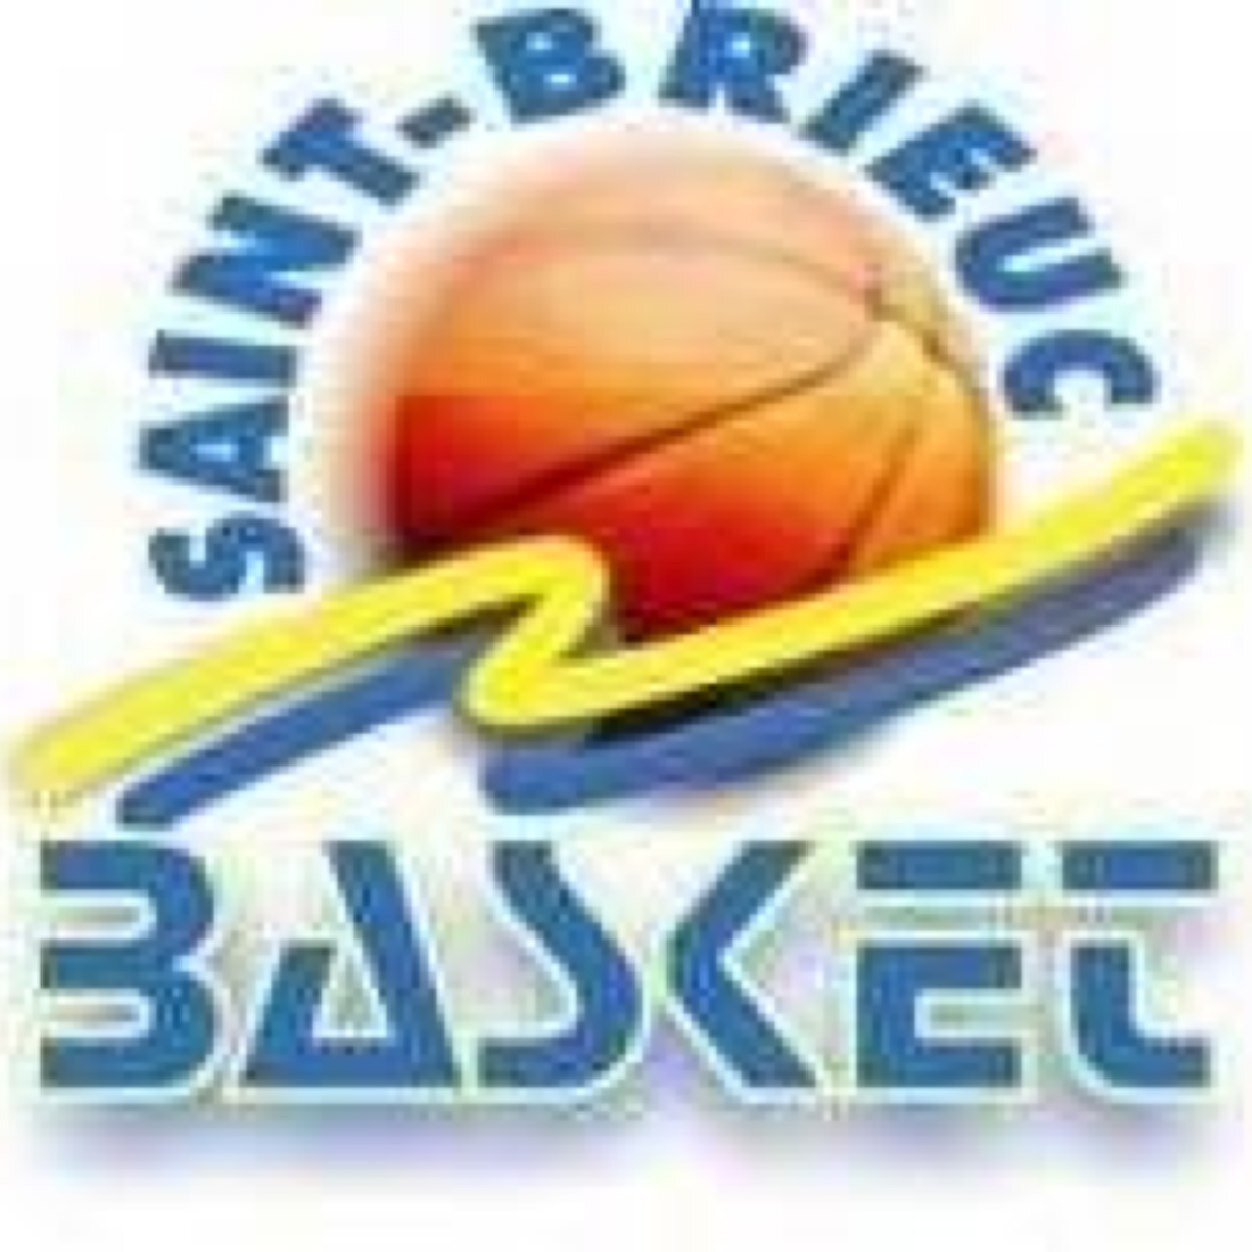 Saint Brieuc Basket - Bretagne - Côtes d'amor 22 - Site Officiel http://t.co/pG6di6Uli3